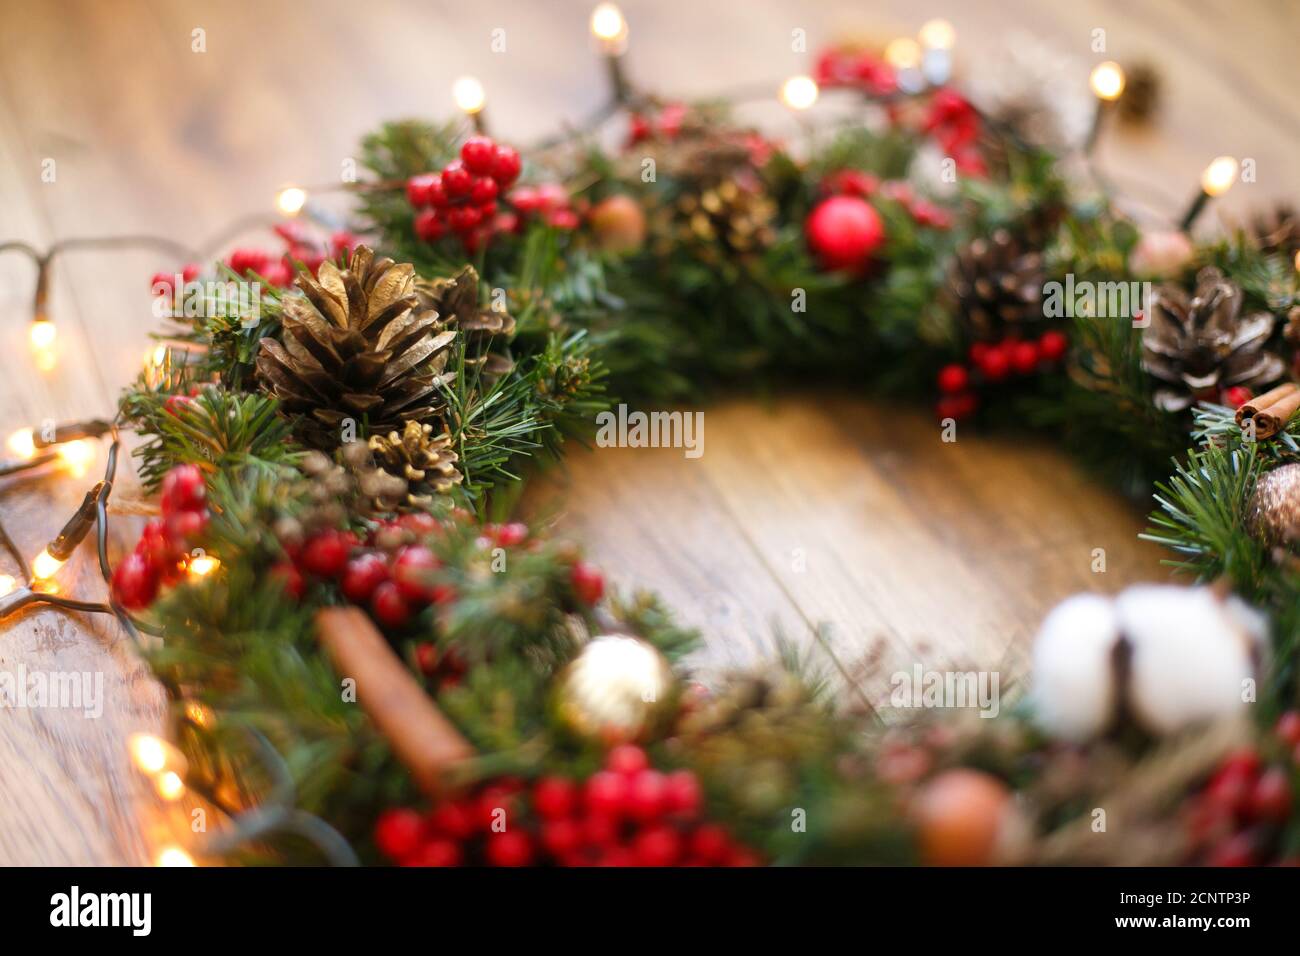 Weihnachtskranz Dekorationen schließen auf rustikalem Holz in Lichtern.  Baumwolle, rote Beeren, Ornamente und Tannenzapfen auf traditionellen  weihnachtskranz, Urlaub Stockfotografie - Alamy